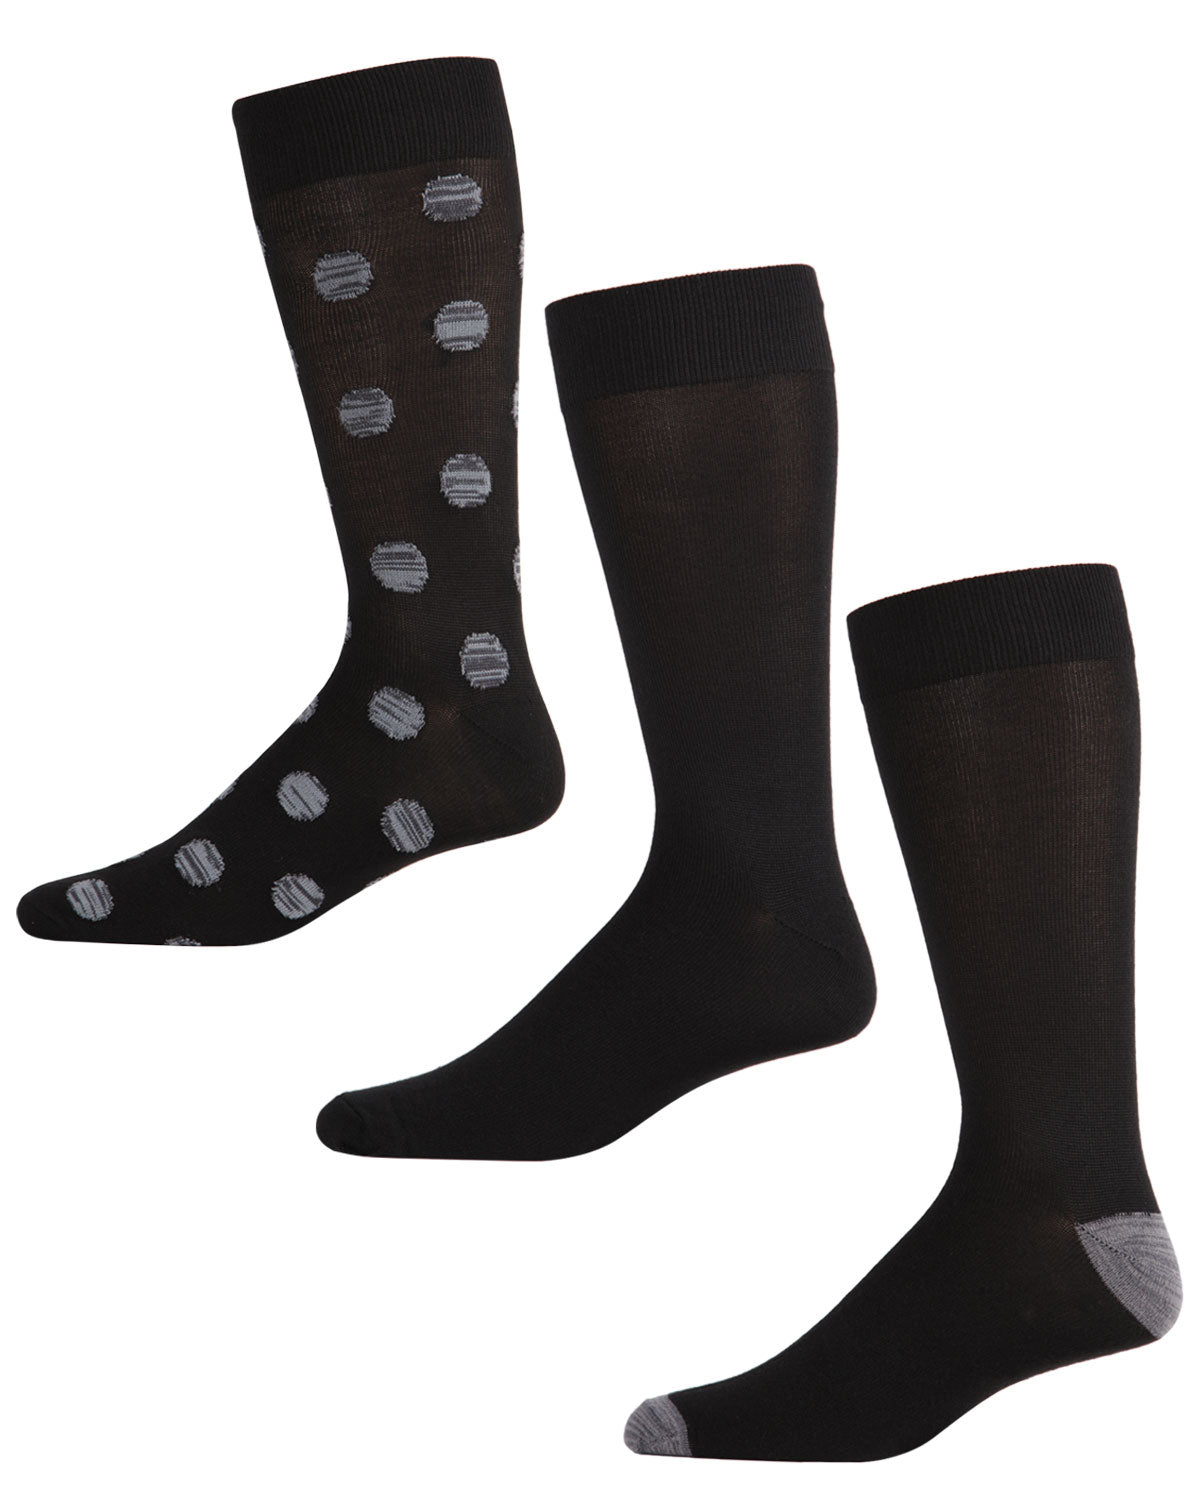 3 Pair Men's Super Soft Allover Polka Dot Crew Socks